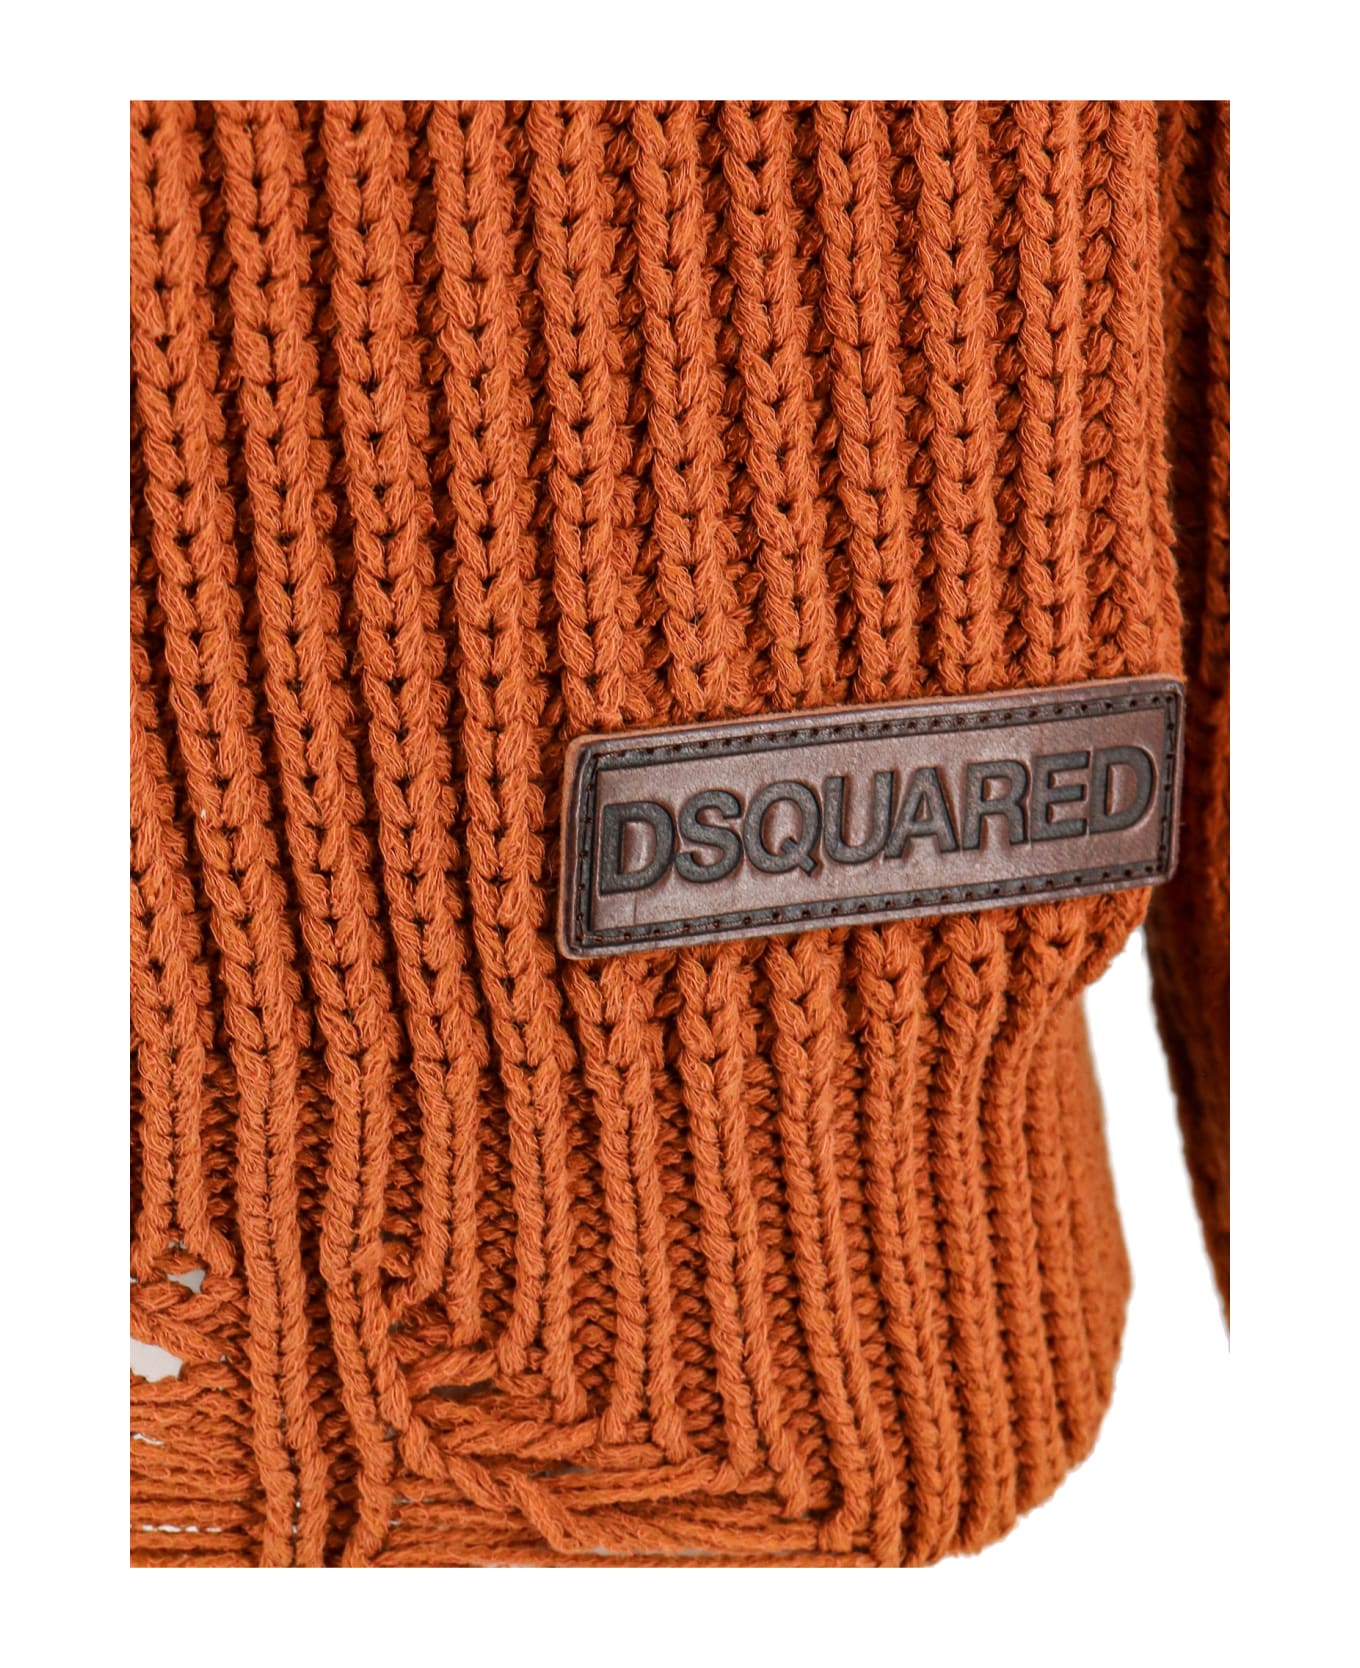 Dsquared2 Cardigan - Orange カーディガン